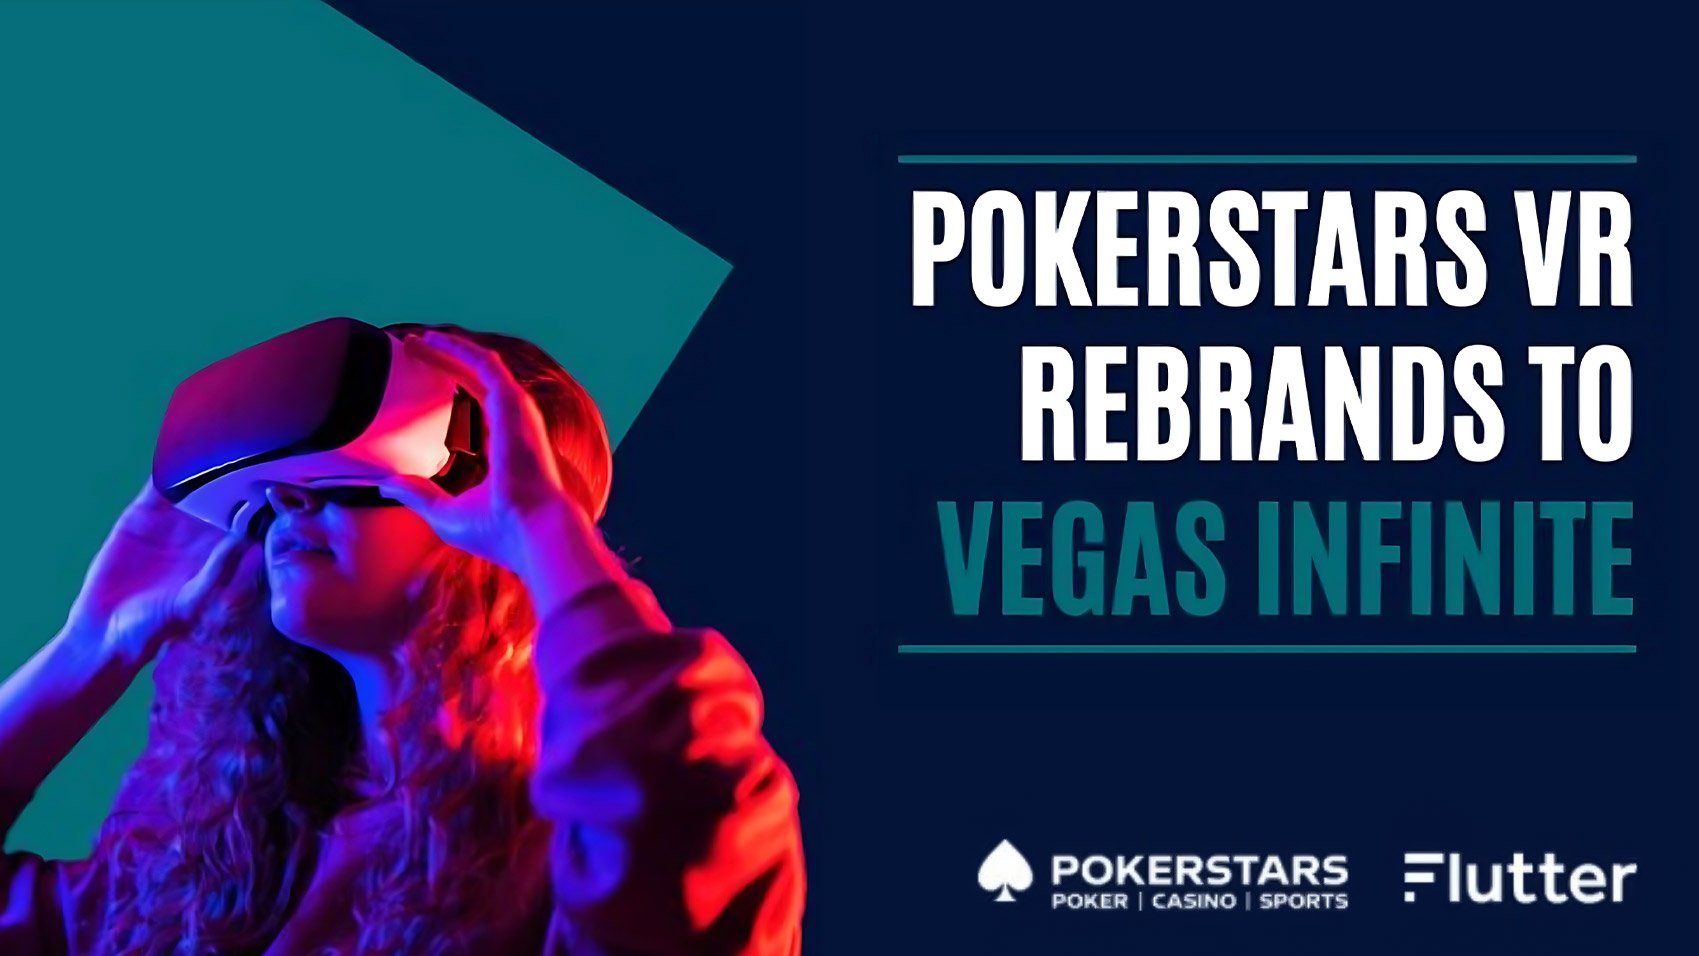 Flutter rebrands PokerStars VR to Vegas Infinite as part of social casino videogame's full-scale overhaul